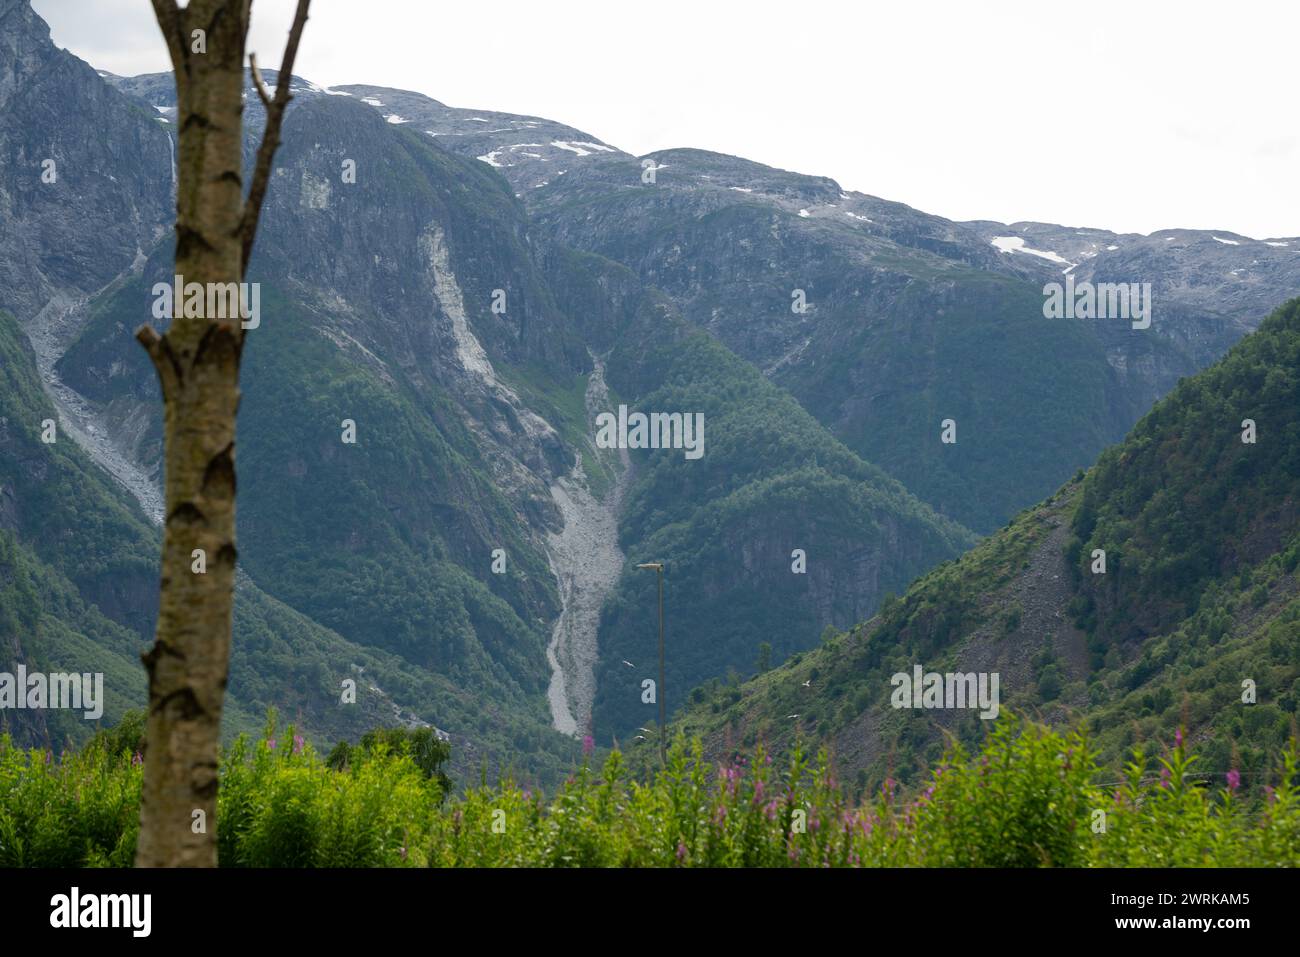 Naturblick auf die norwegischen Fjordberge mit Felsen, auf denen grüne Bäume wachsen und es gab eine Lawine von Schnee. Stockfoto